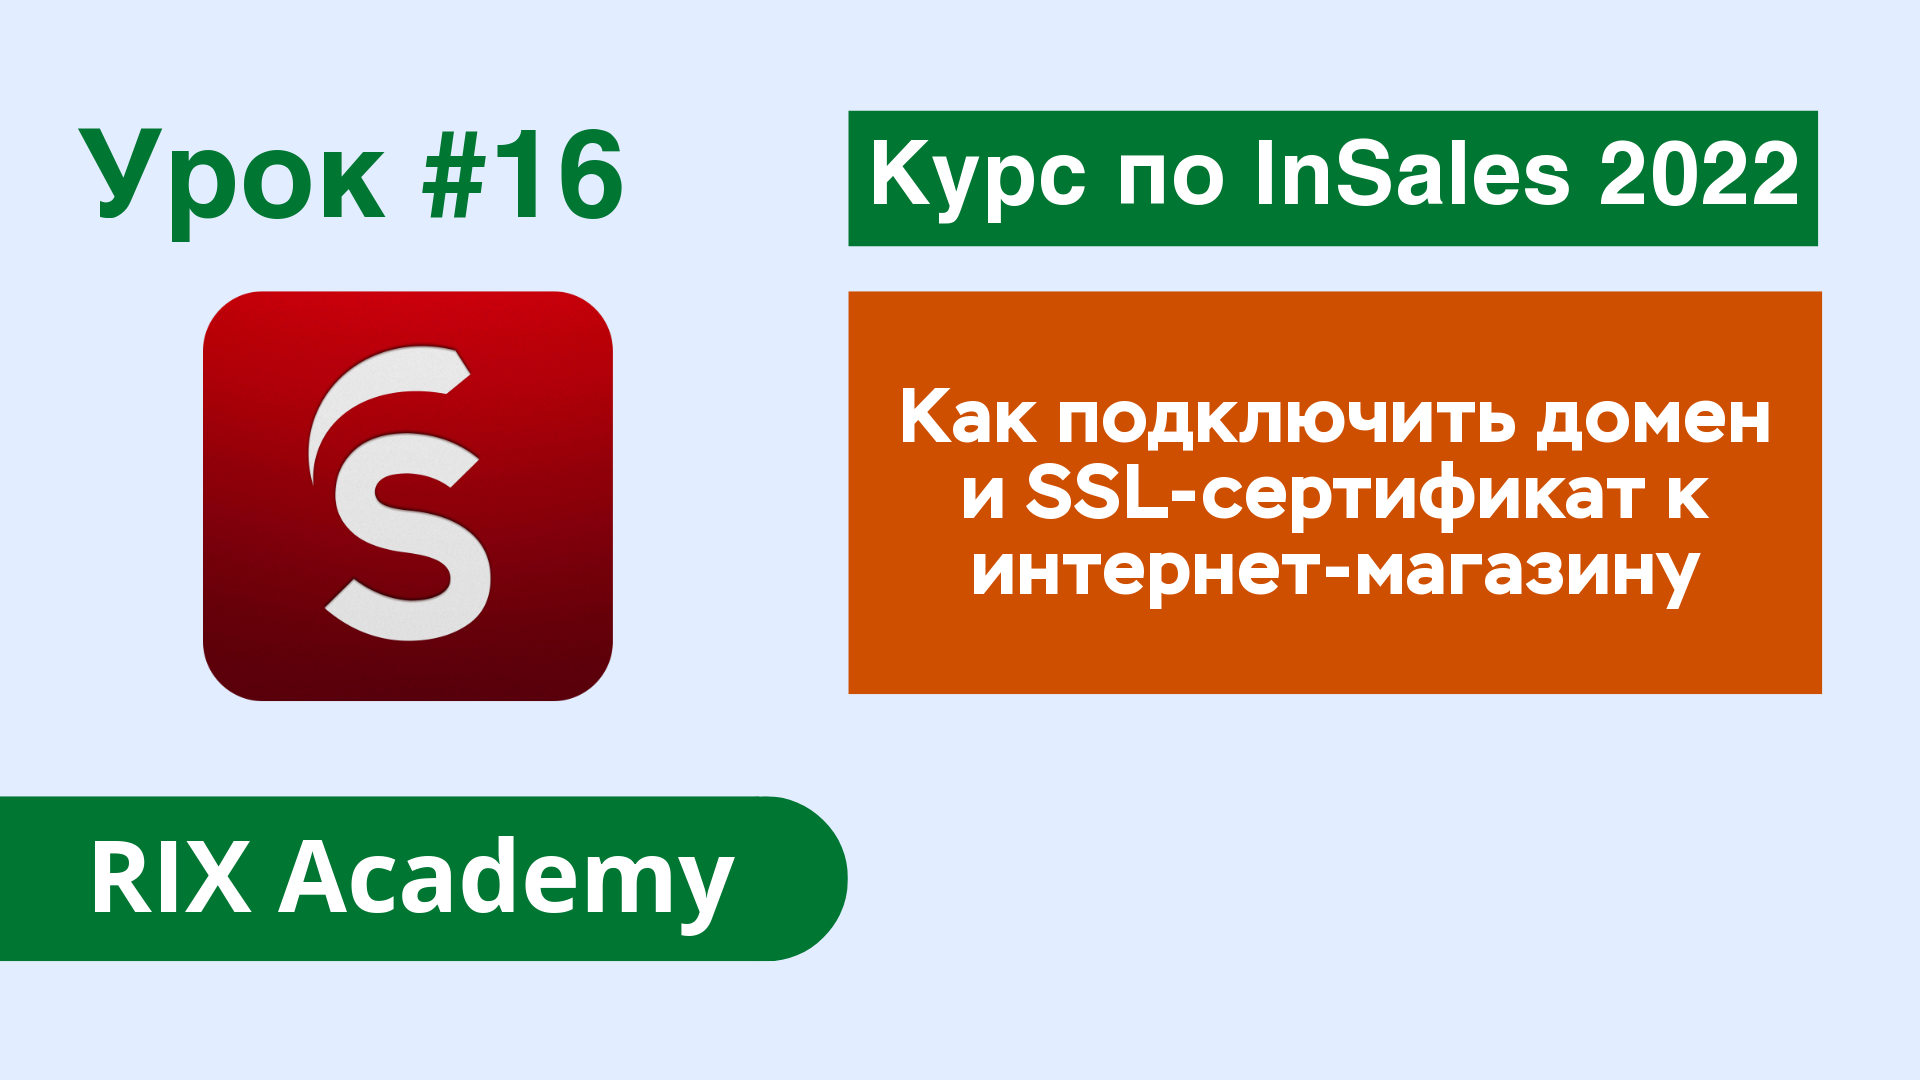 Как подключить домен и SSL-сертификат к интернет-магазину на конструкторе InSales #16